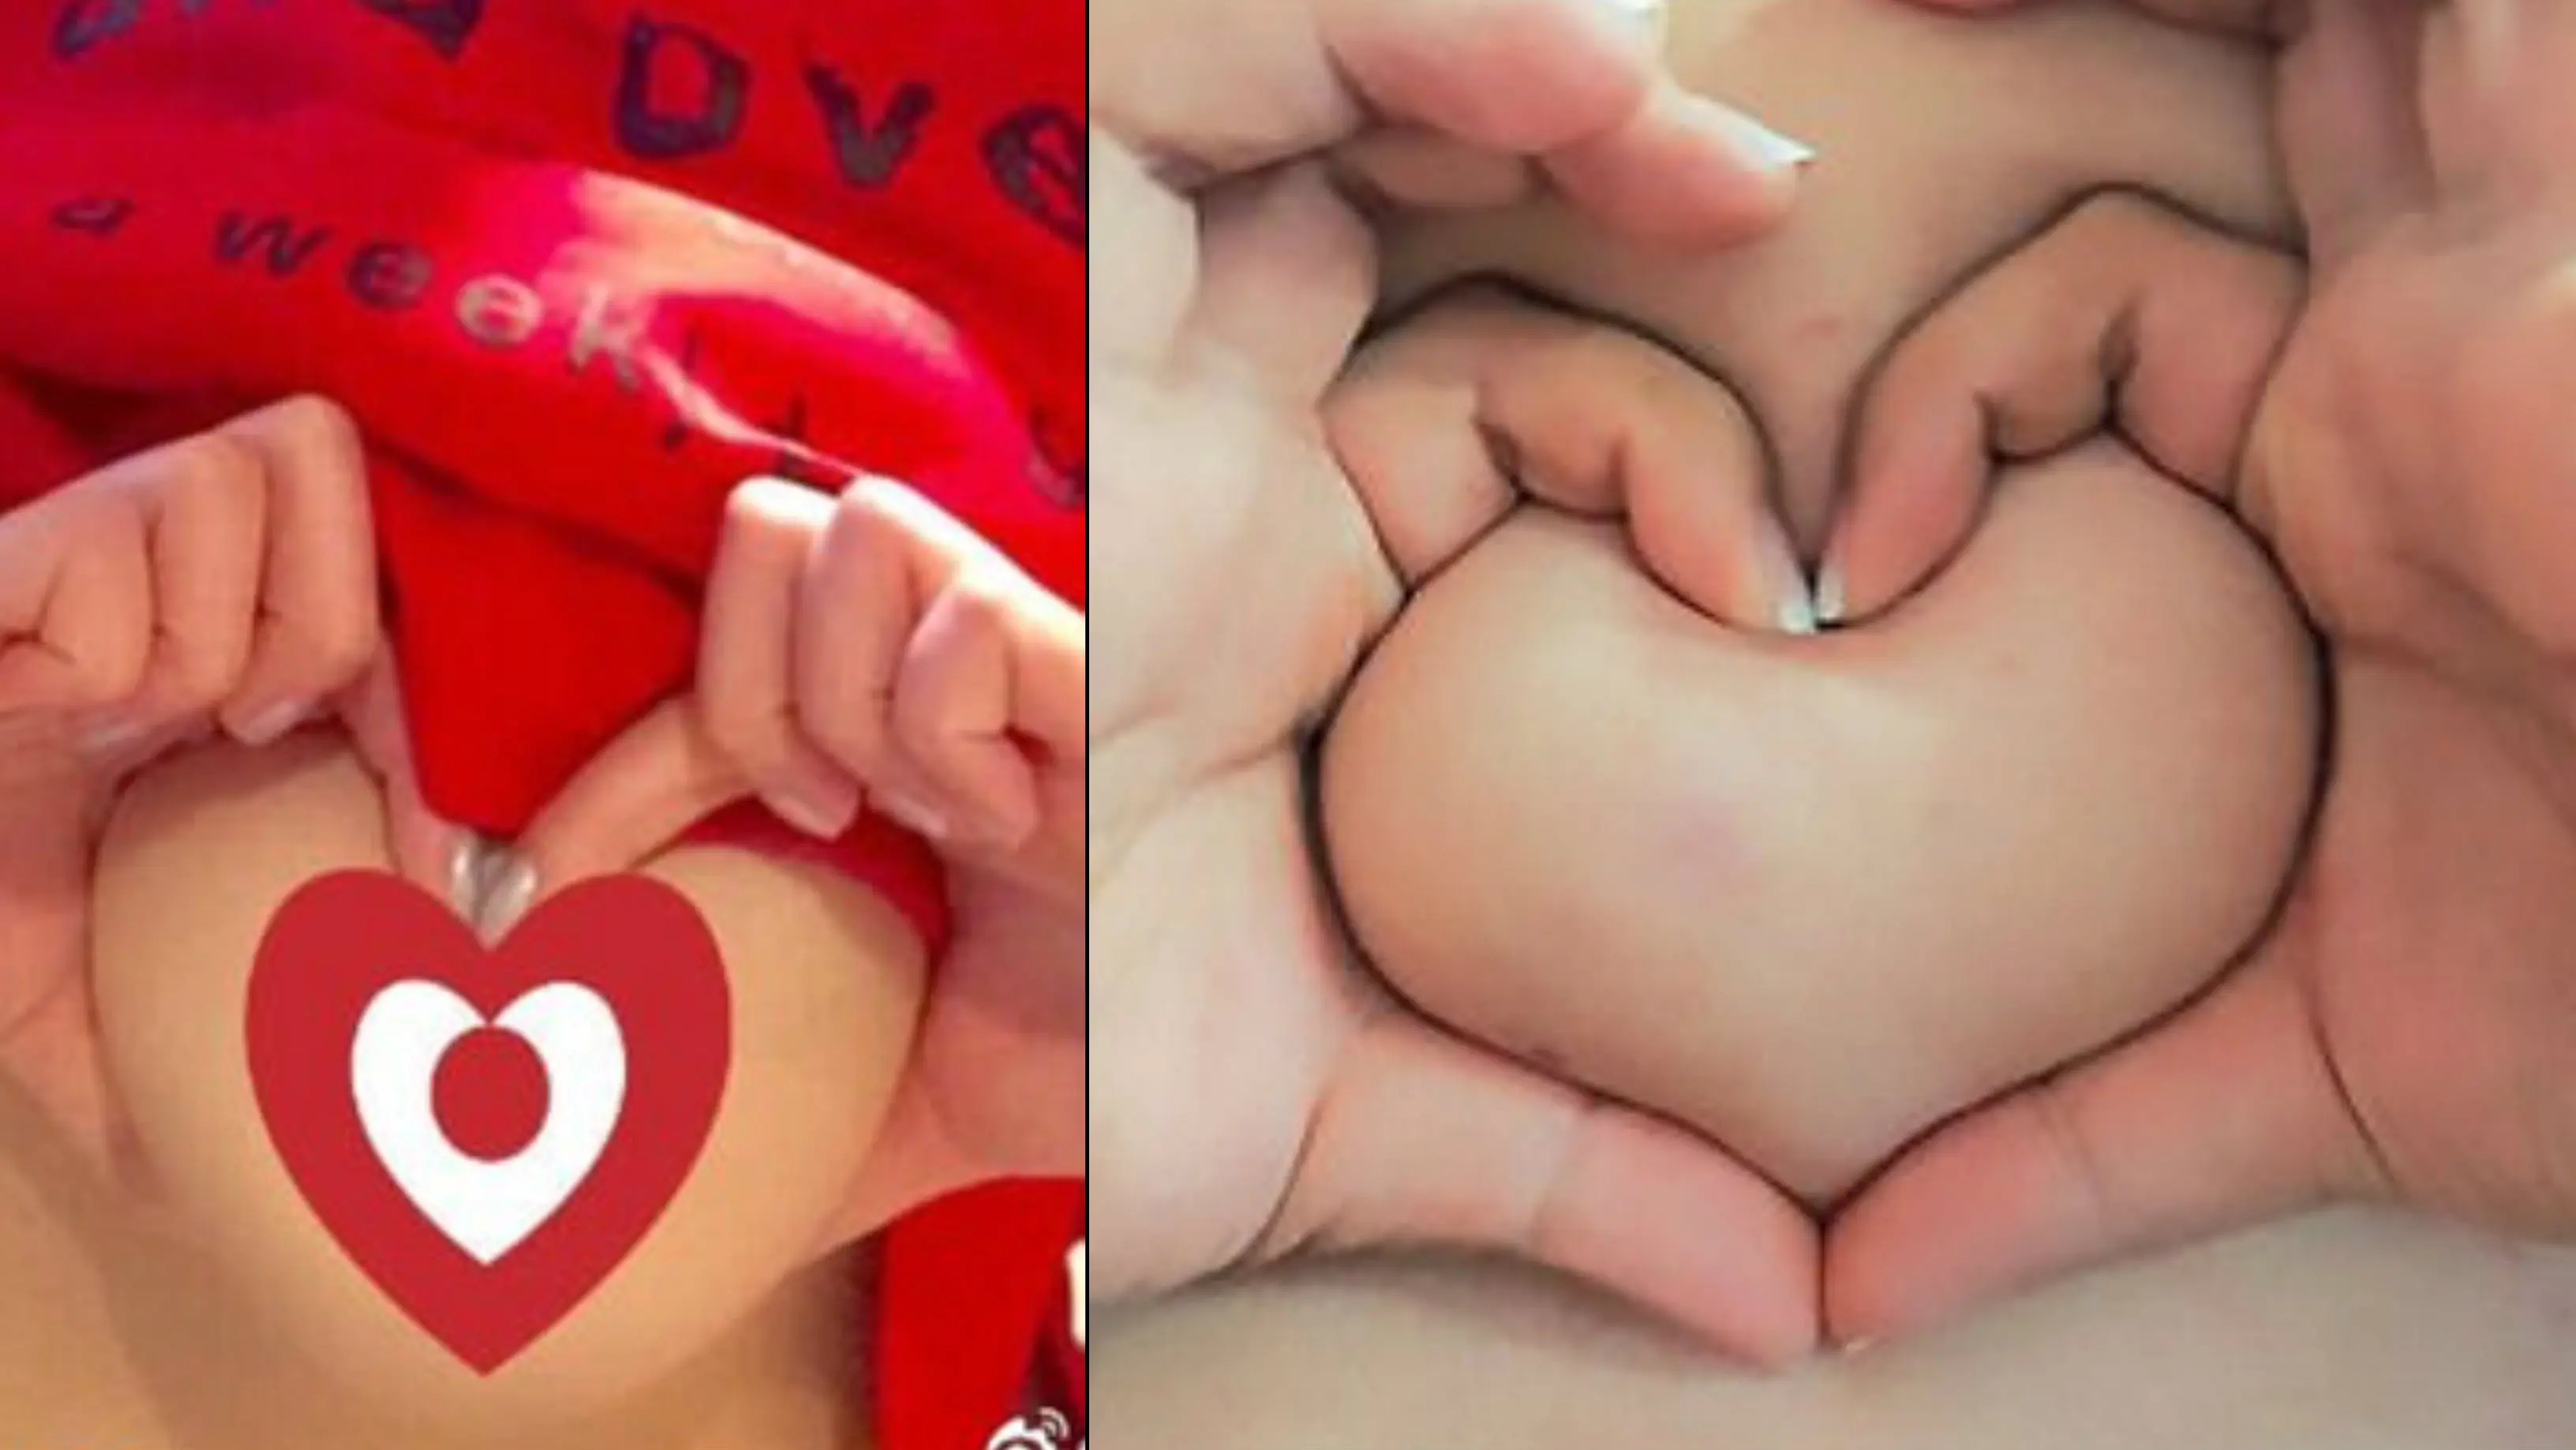 Heart-shaped breast challenge, tantangan membentuk 'hati' dengan jari di payudara yang tengah populer di China. (Weibo/AsiaWire)